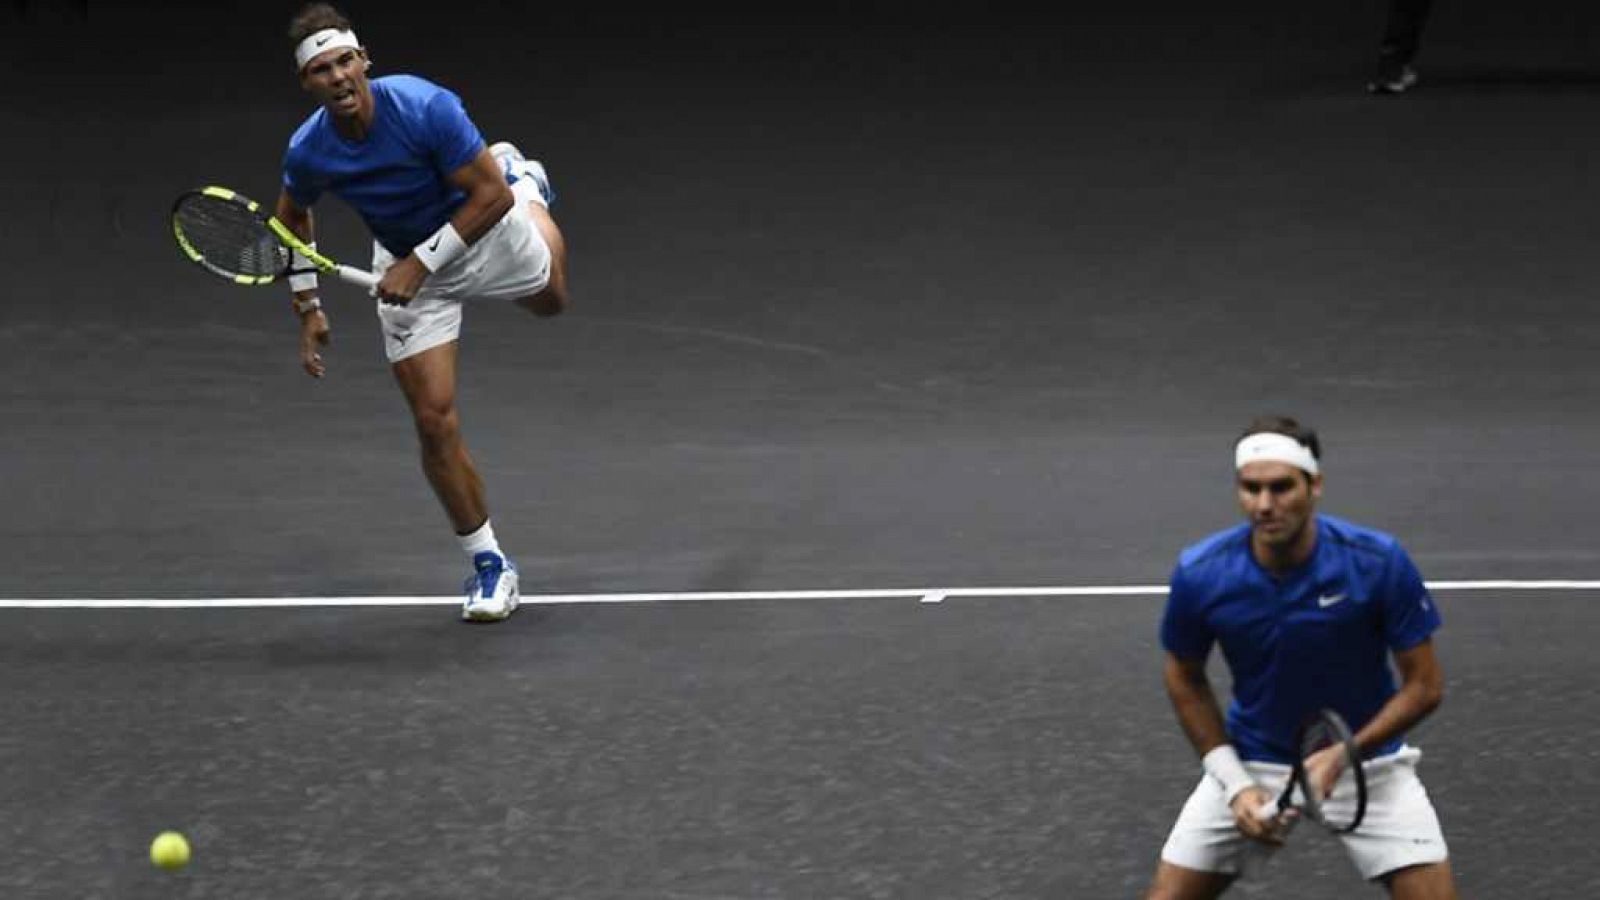 Tenis - Laver Cup 2017 Dobles: R. Nadal / R.Federer - S.Querrey/ J. Sock